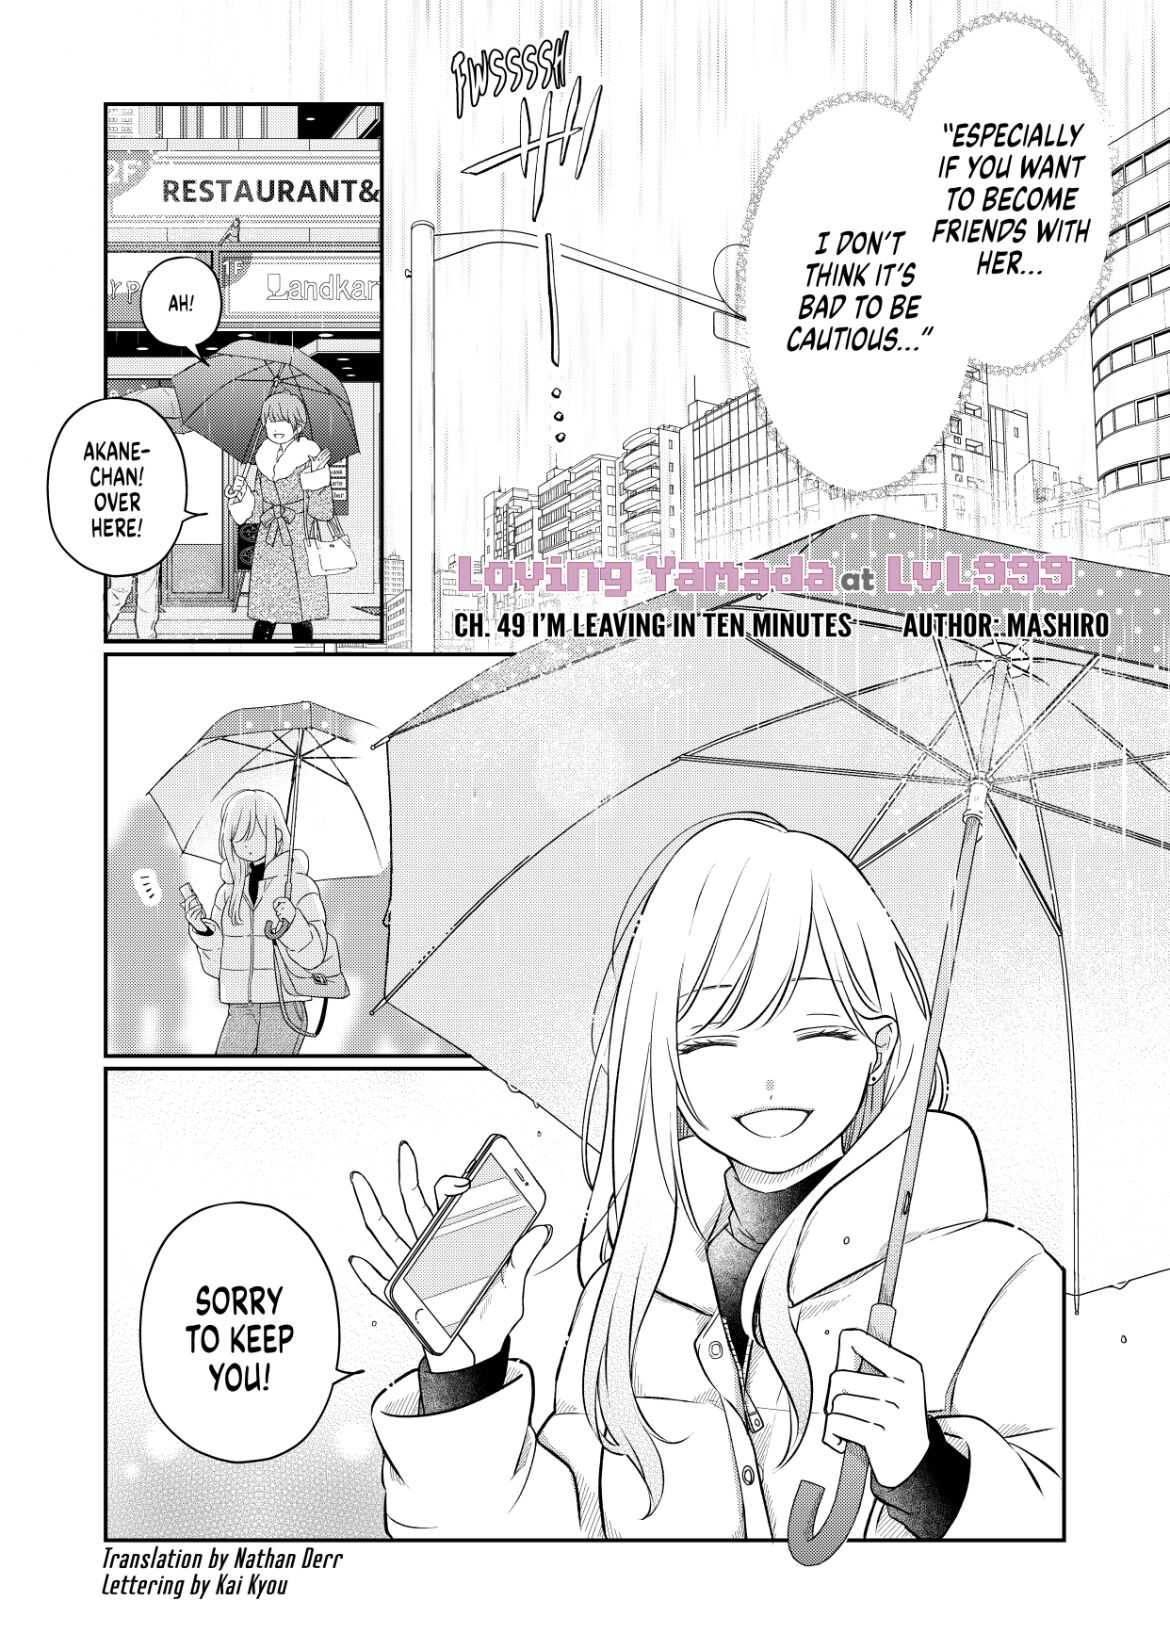 Loving Yamada at Lv999 (Official) Manga